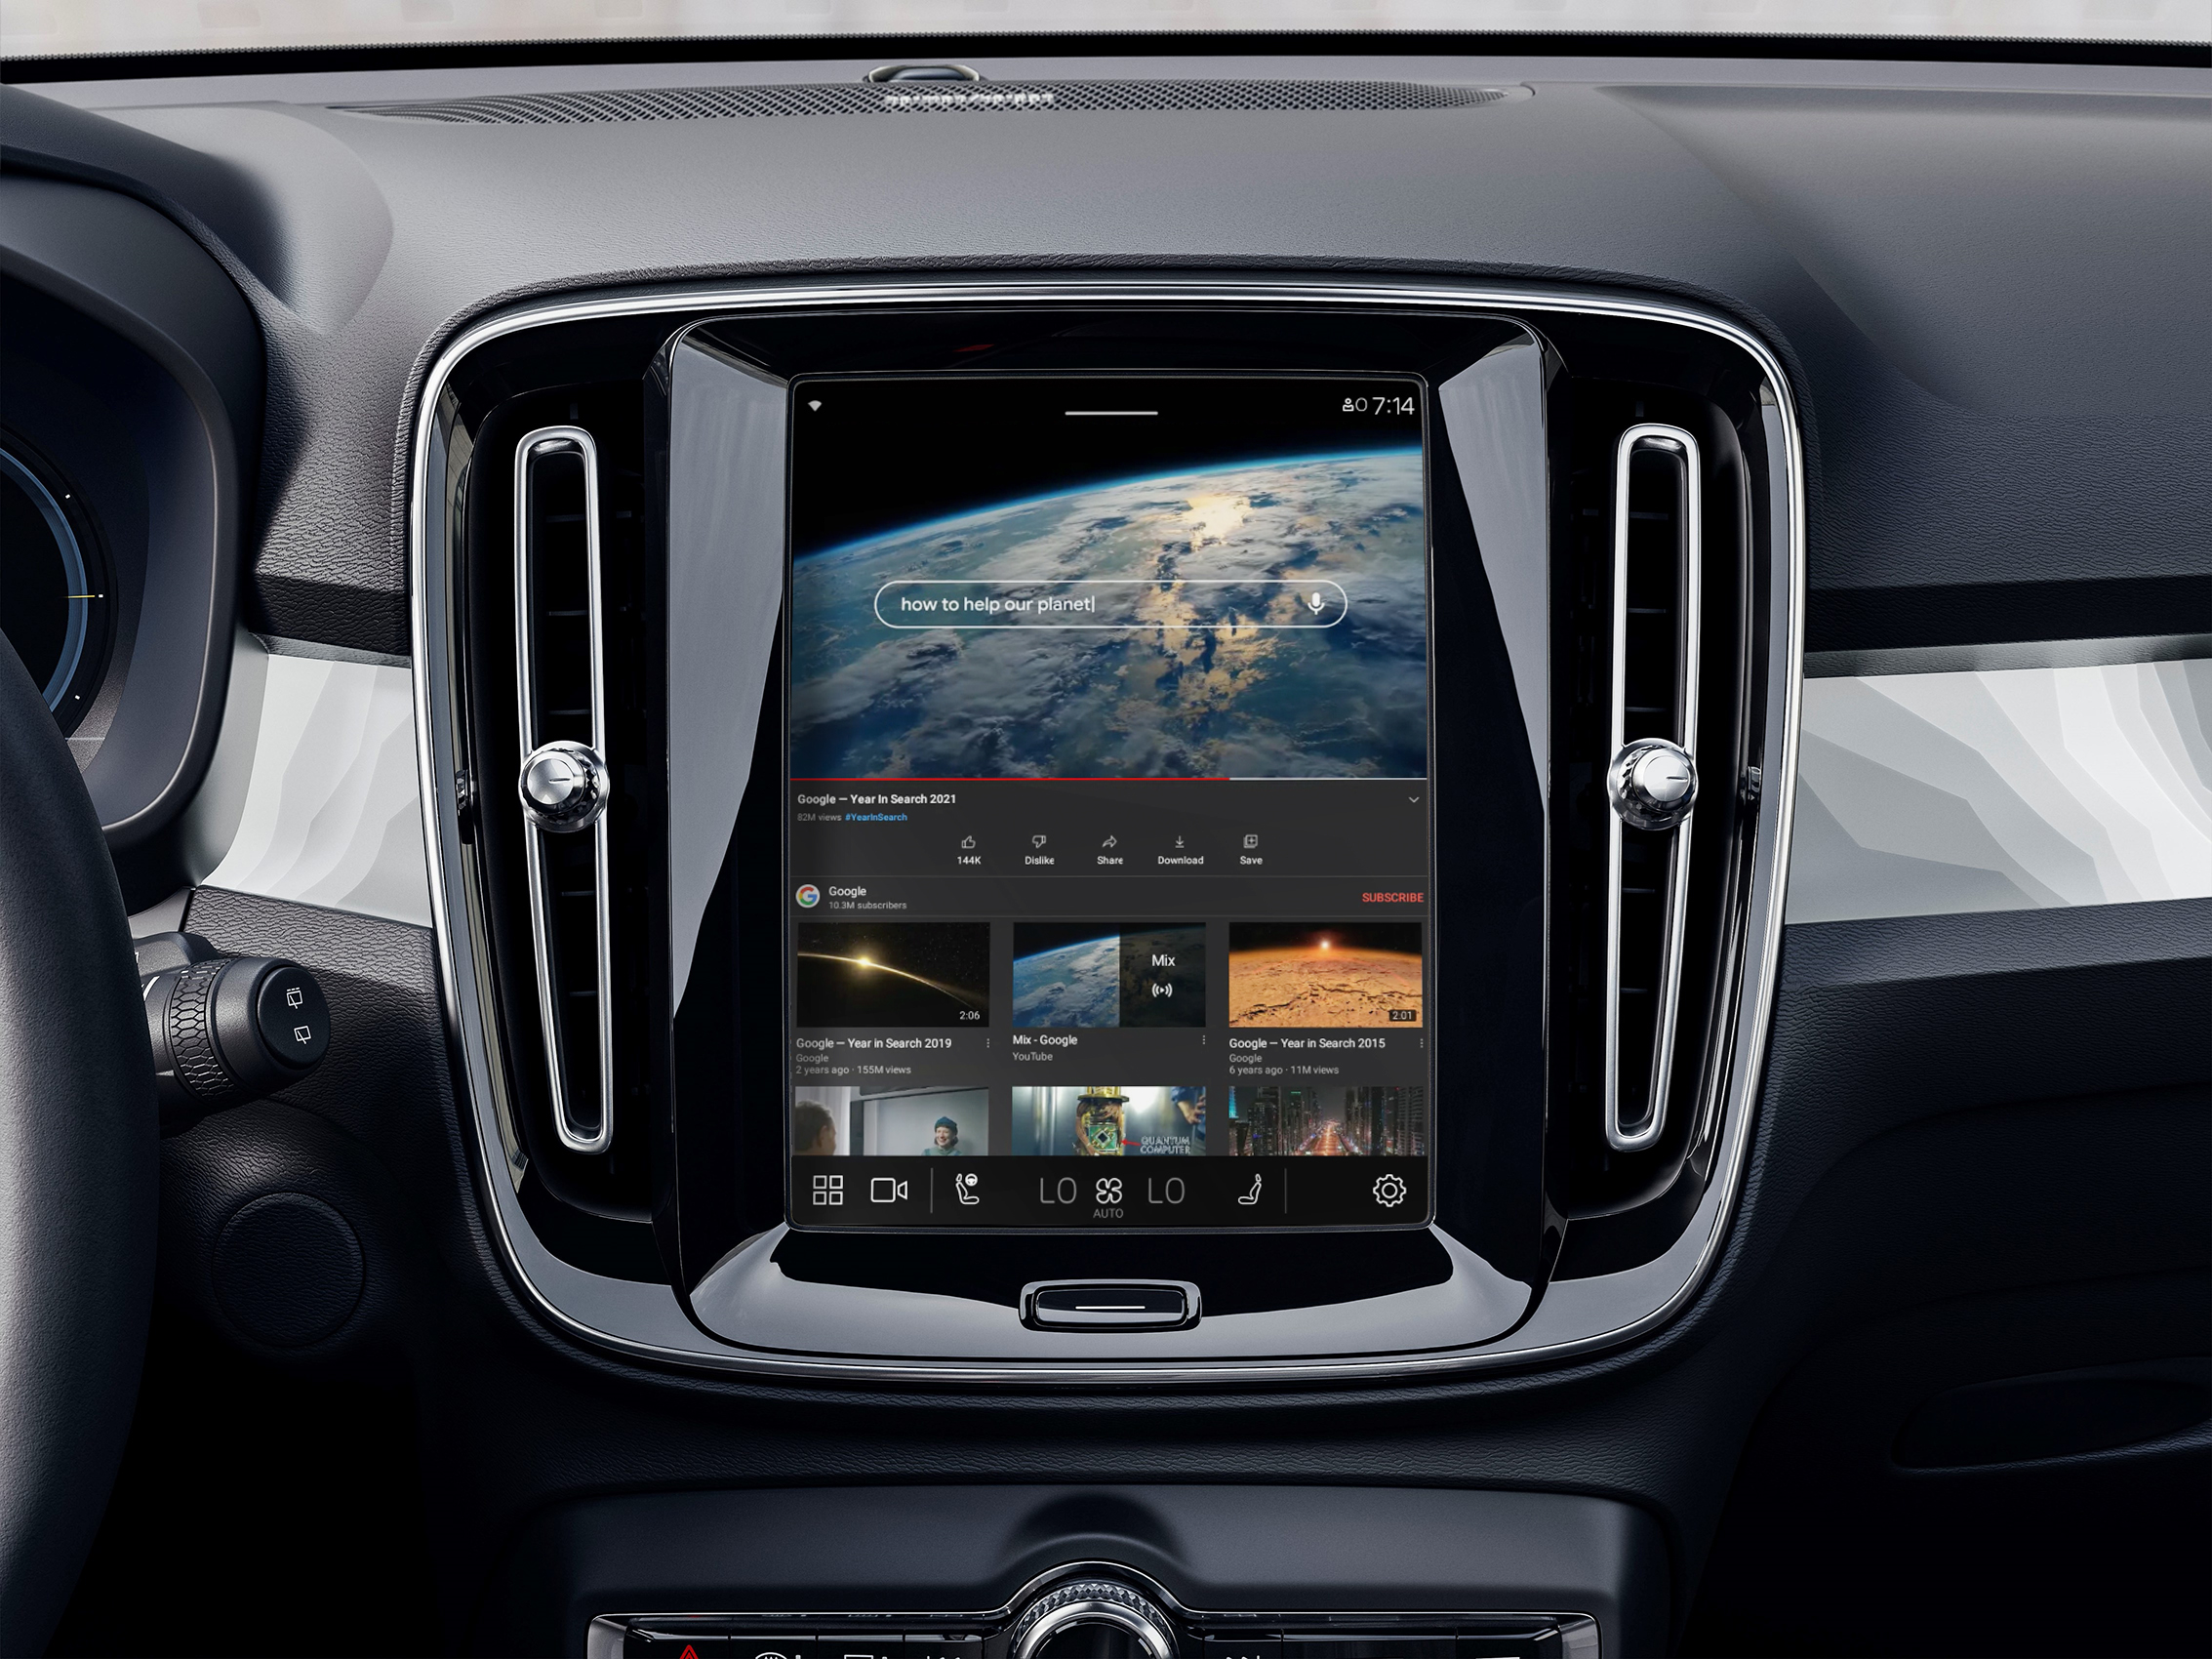 Volvo первой запустит прямую интеграцию с устройствами Google Assistant, а также добавит авто поддержку YouTube